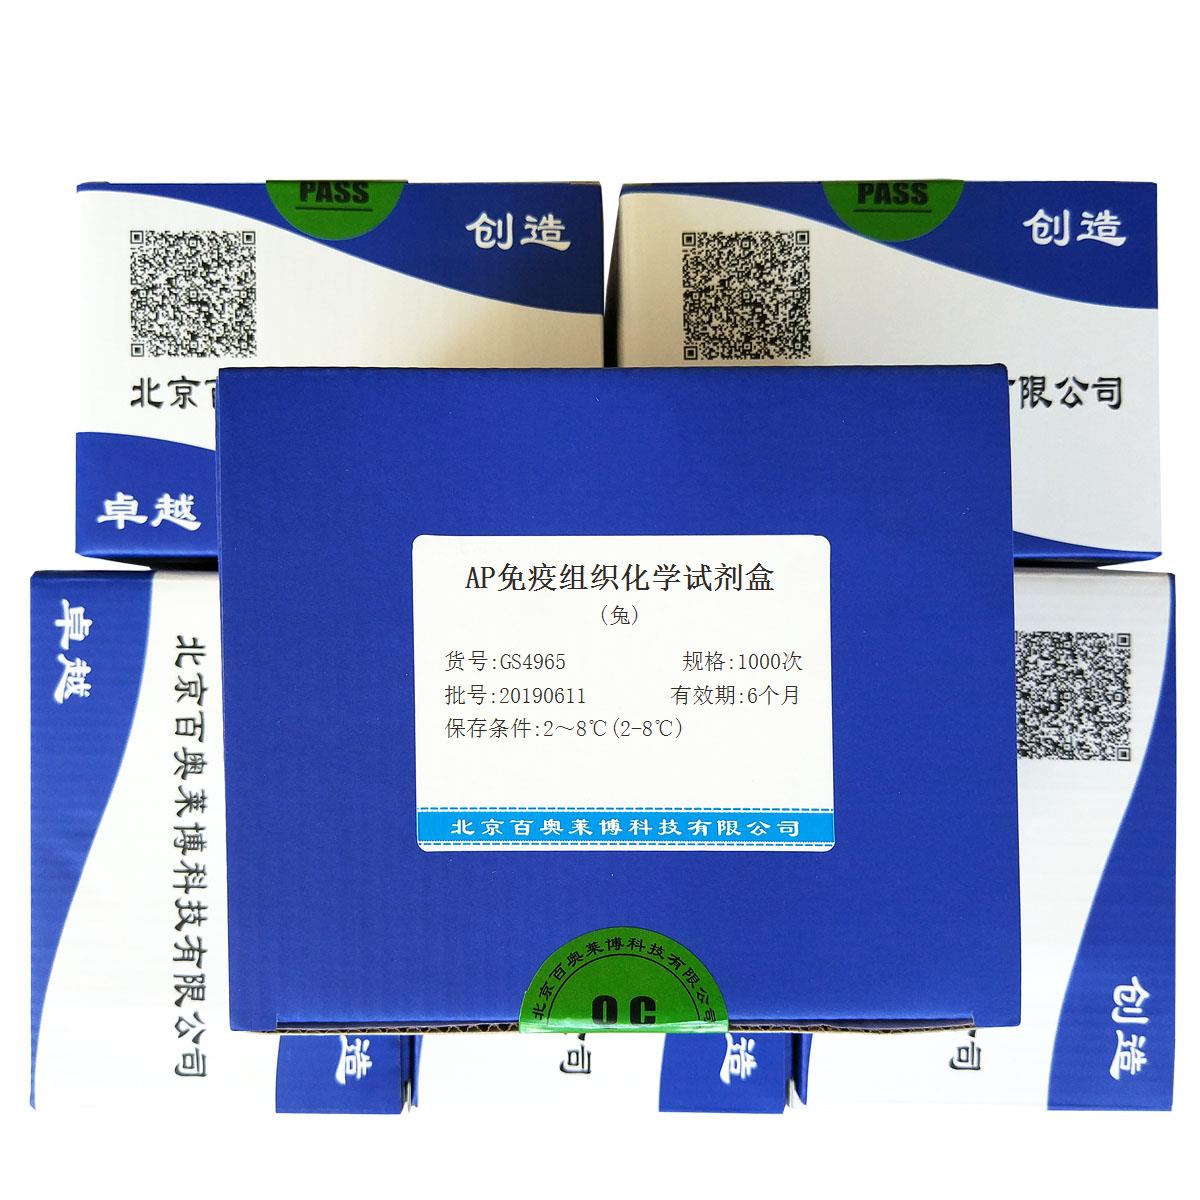 AP免疫组织化学试剂盒(兔)北京品牌